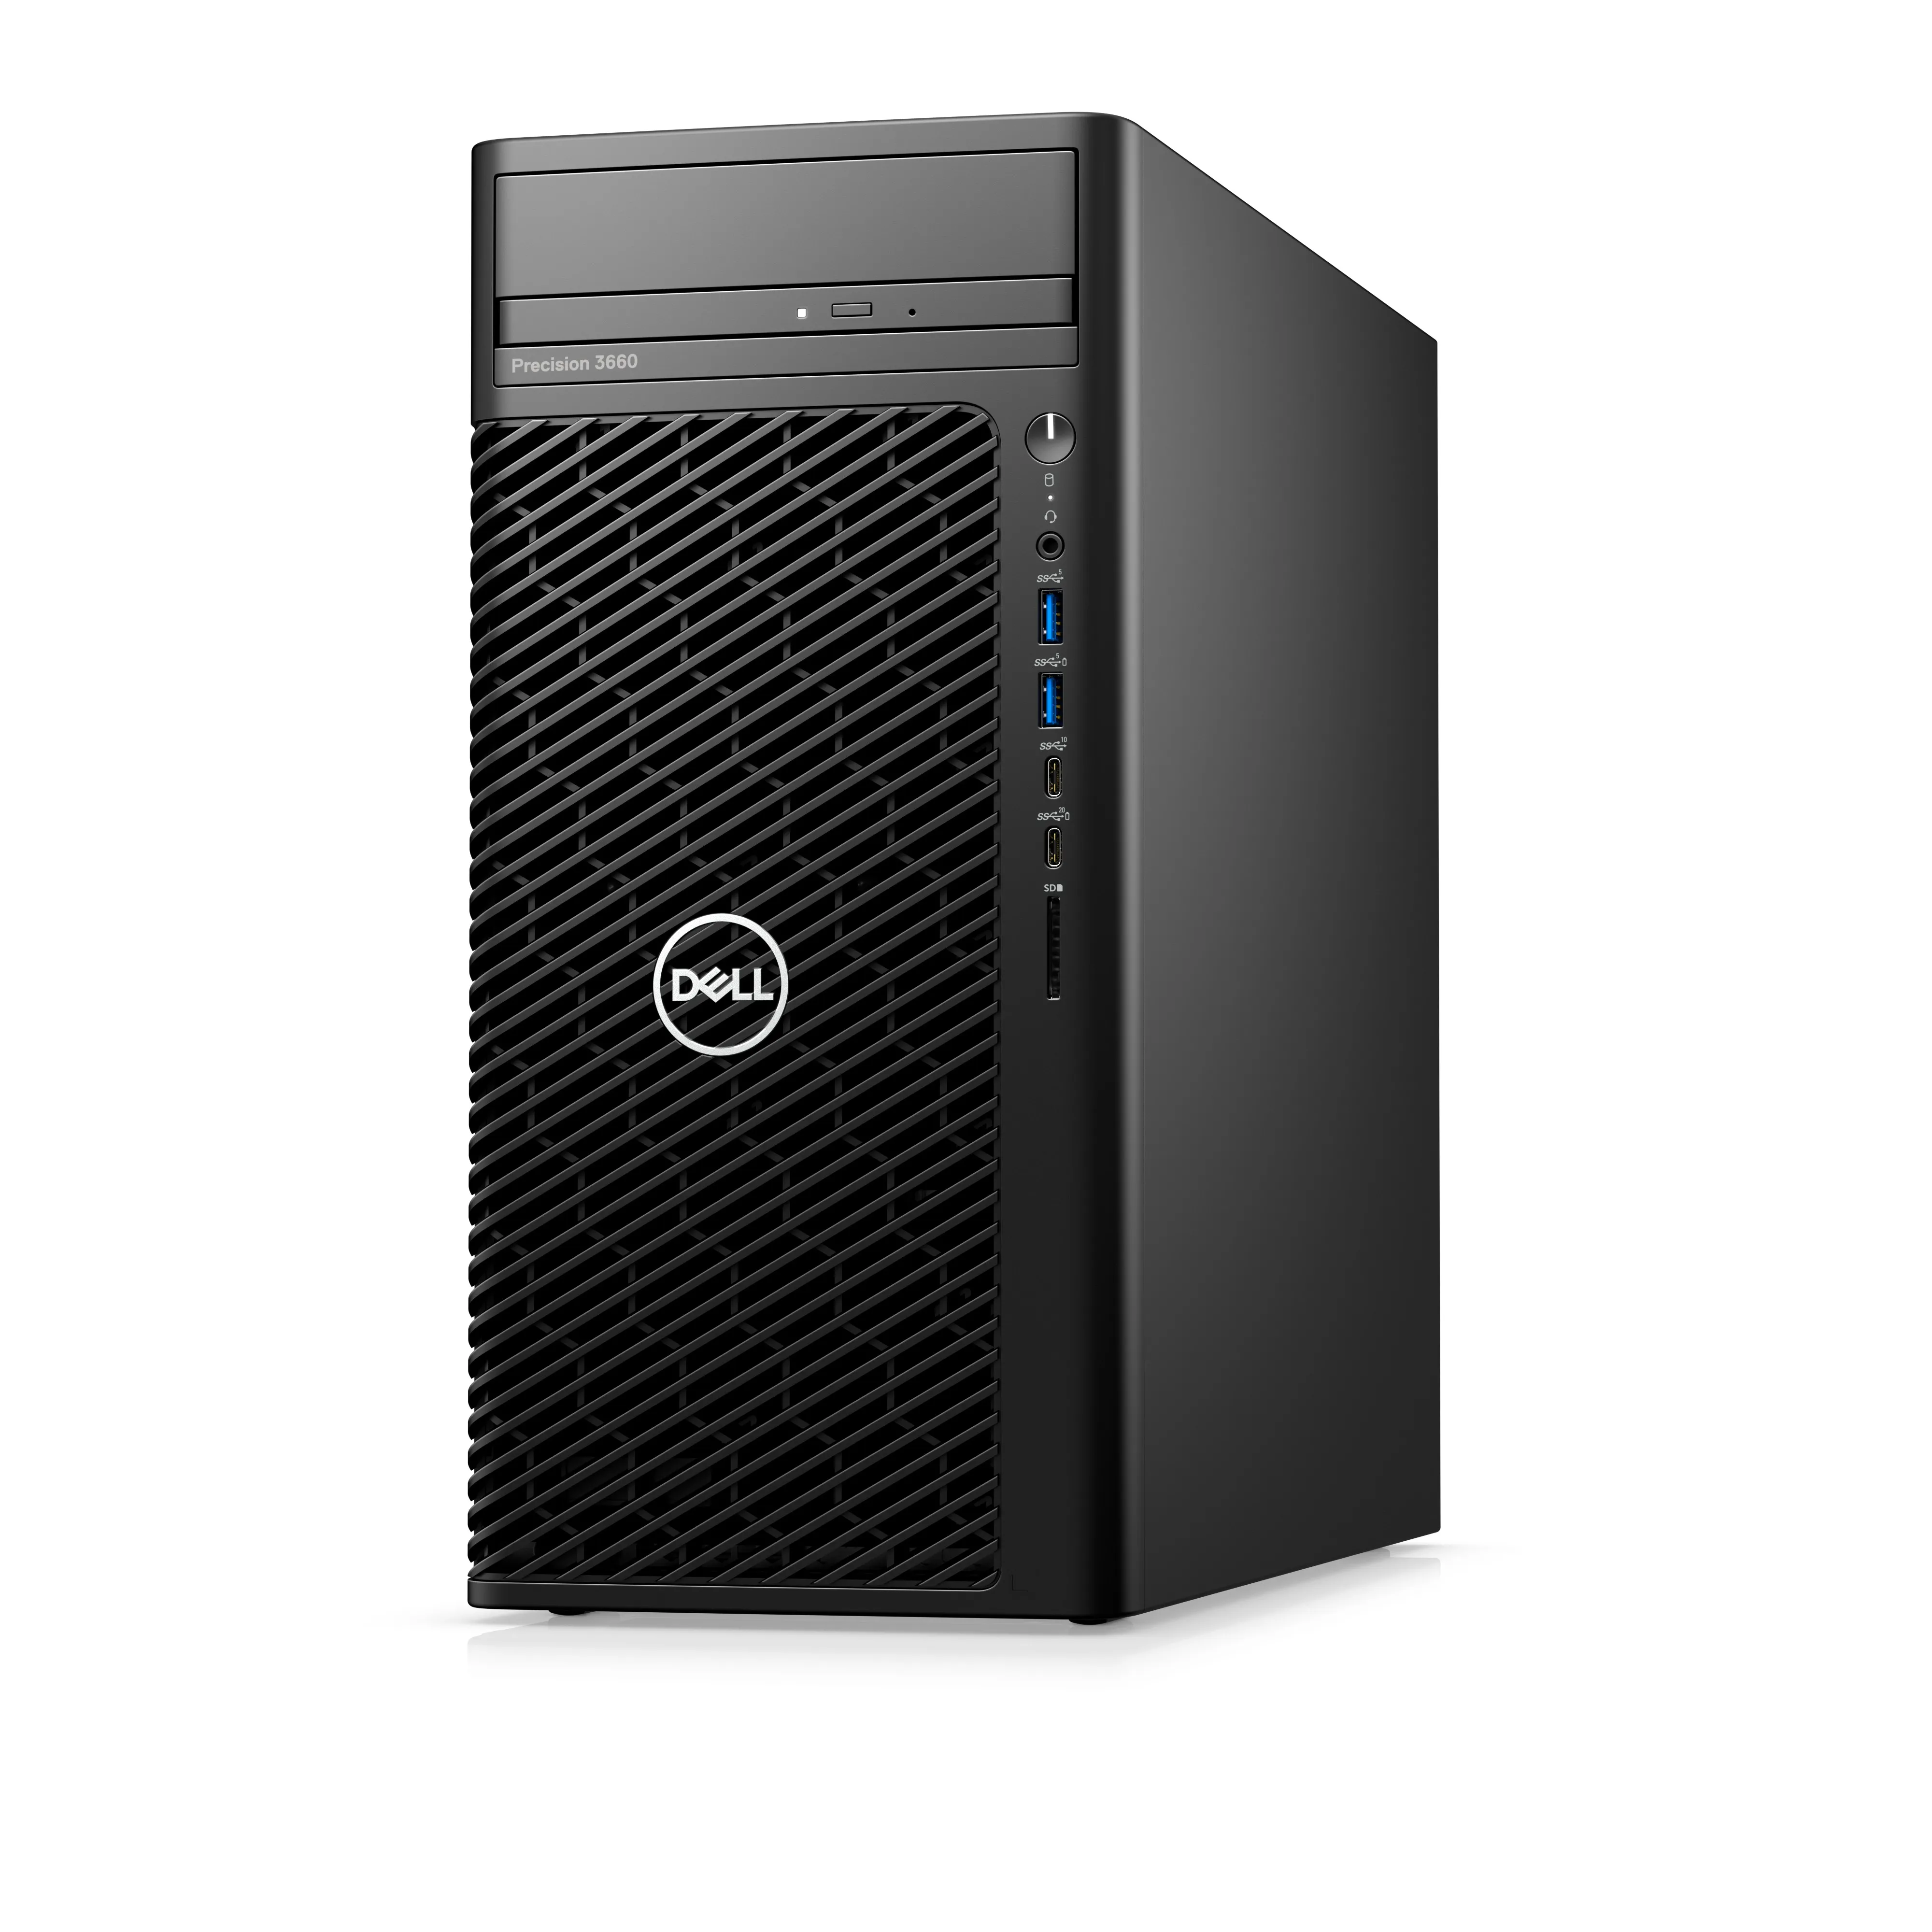 Dell Precision 3660 Tower - i9 12900K - 16GB RAM - 512GB SSD - Win 10 Pro